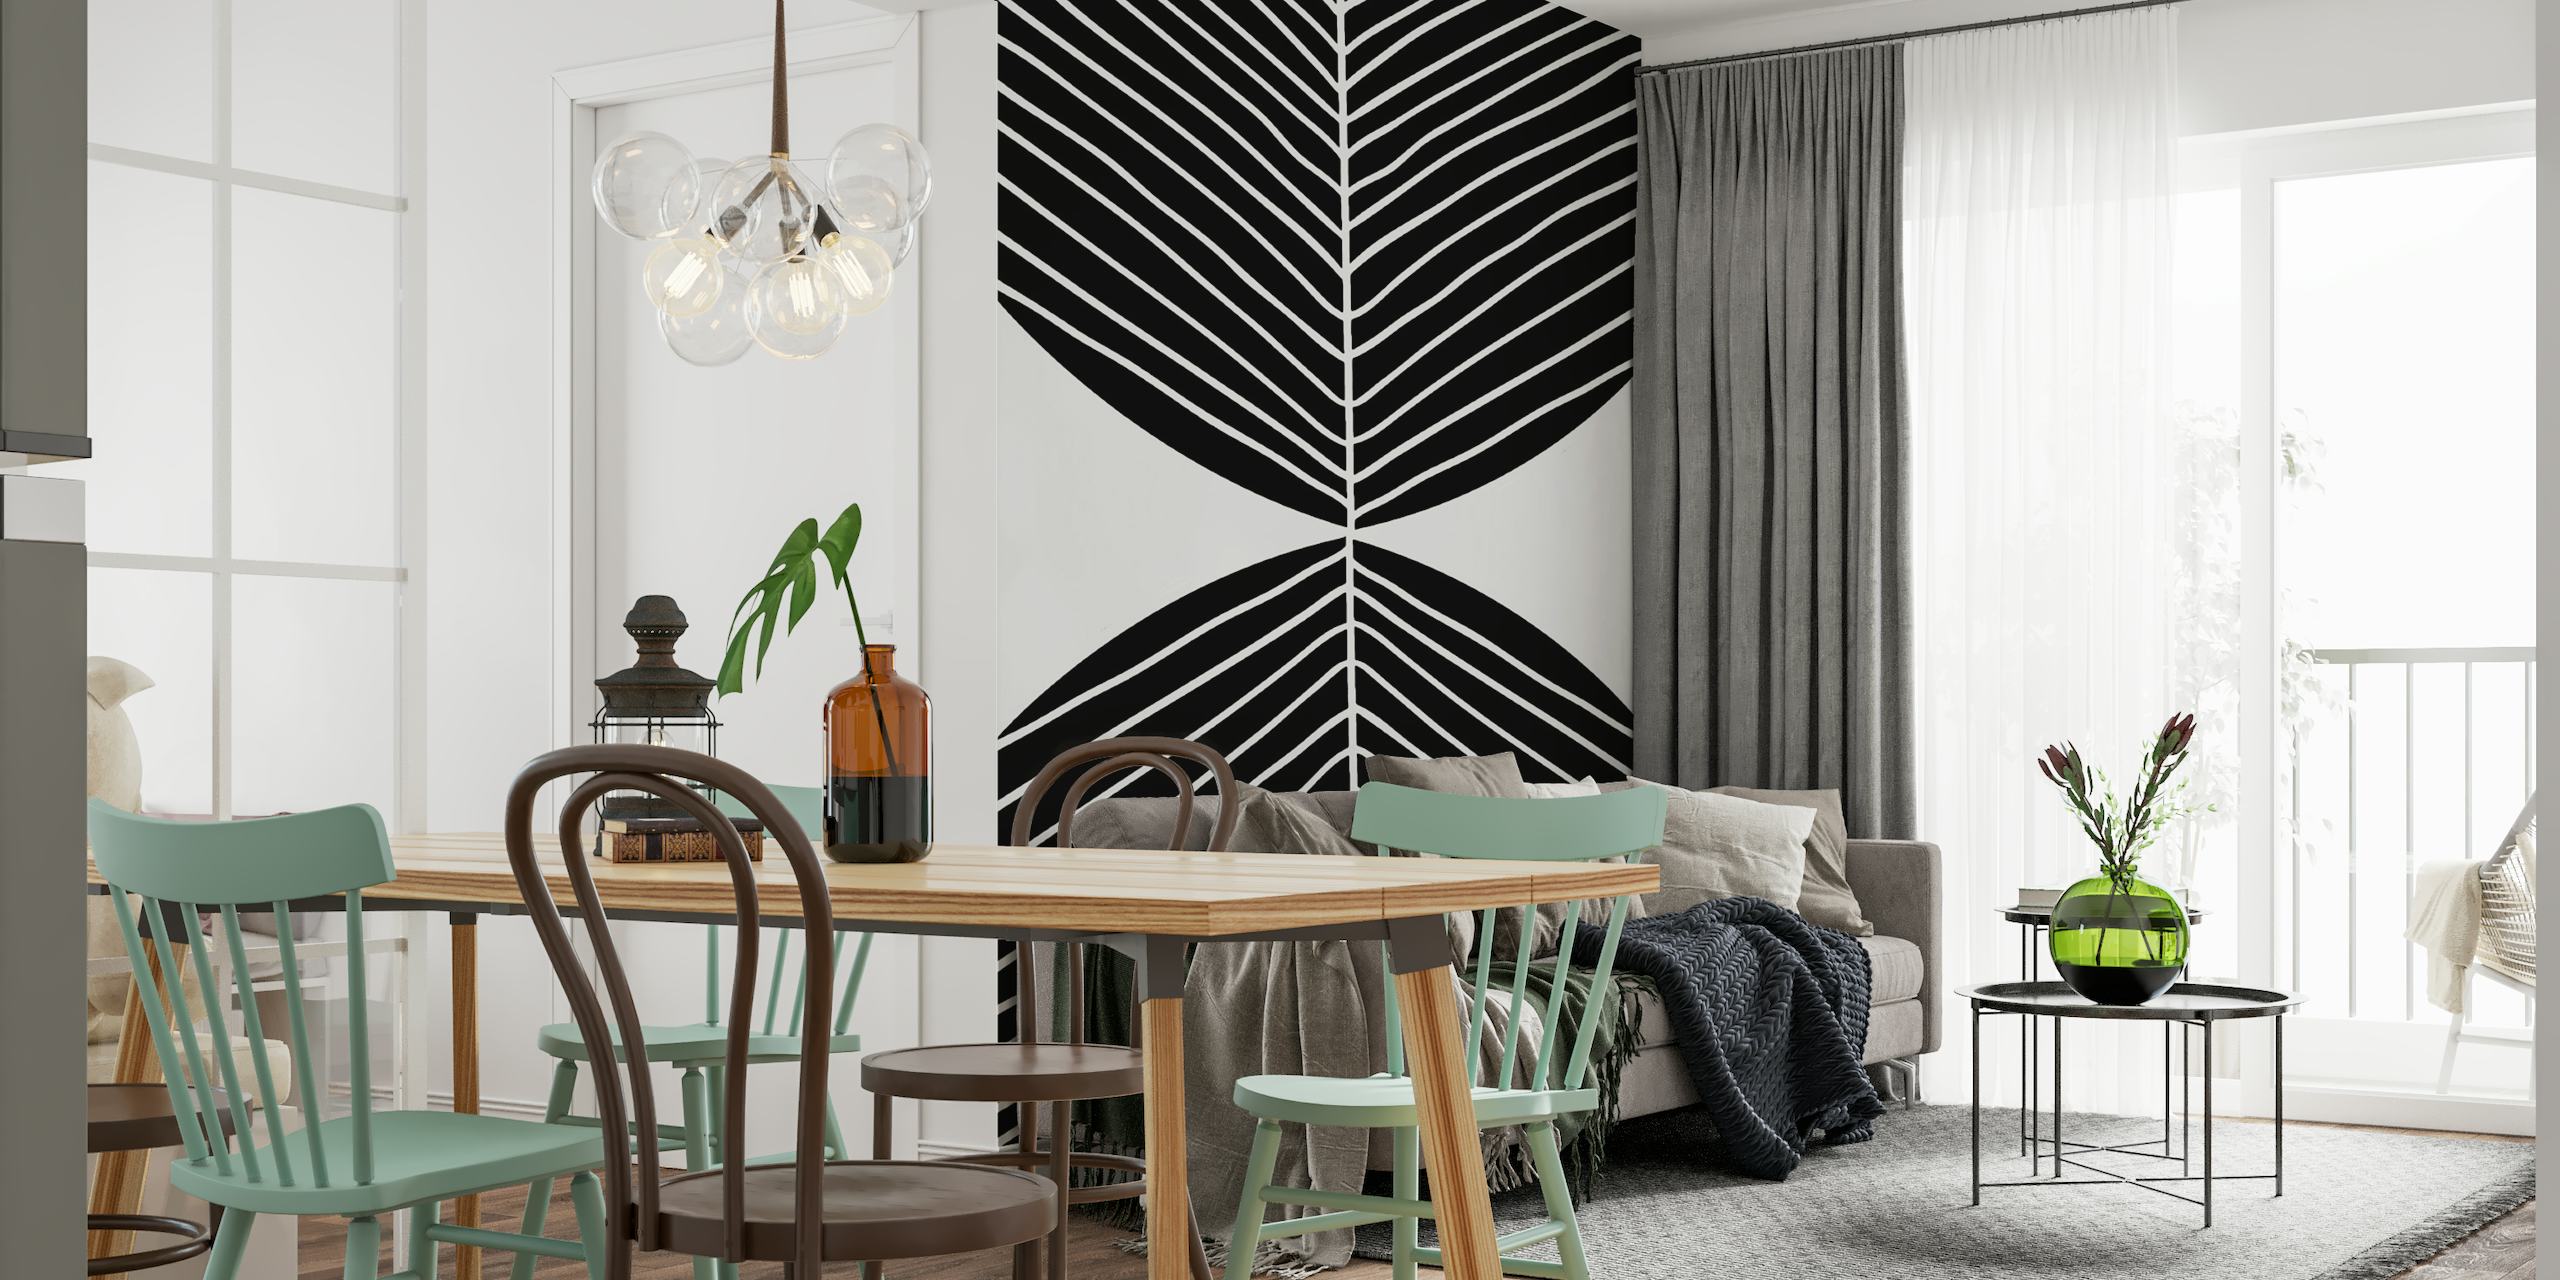 Czarno-biała, minimalistyczna nordycka fototapeta z motywem liści